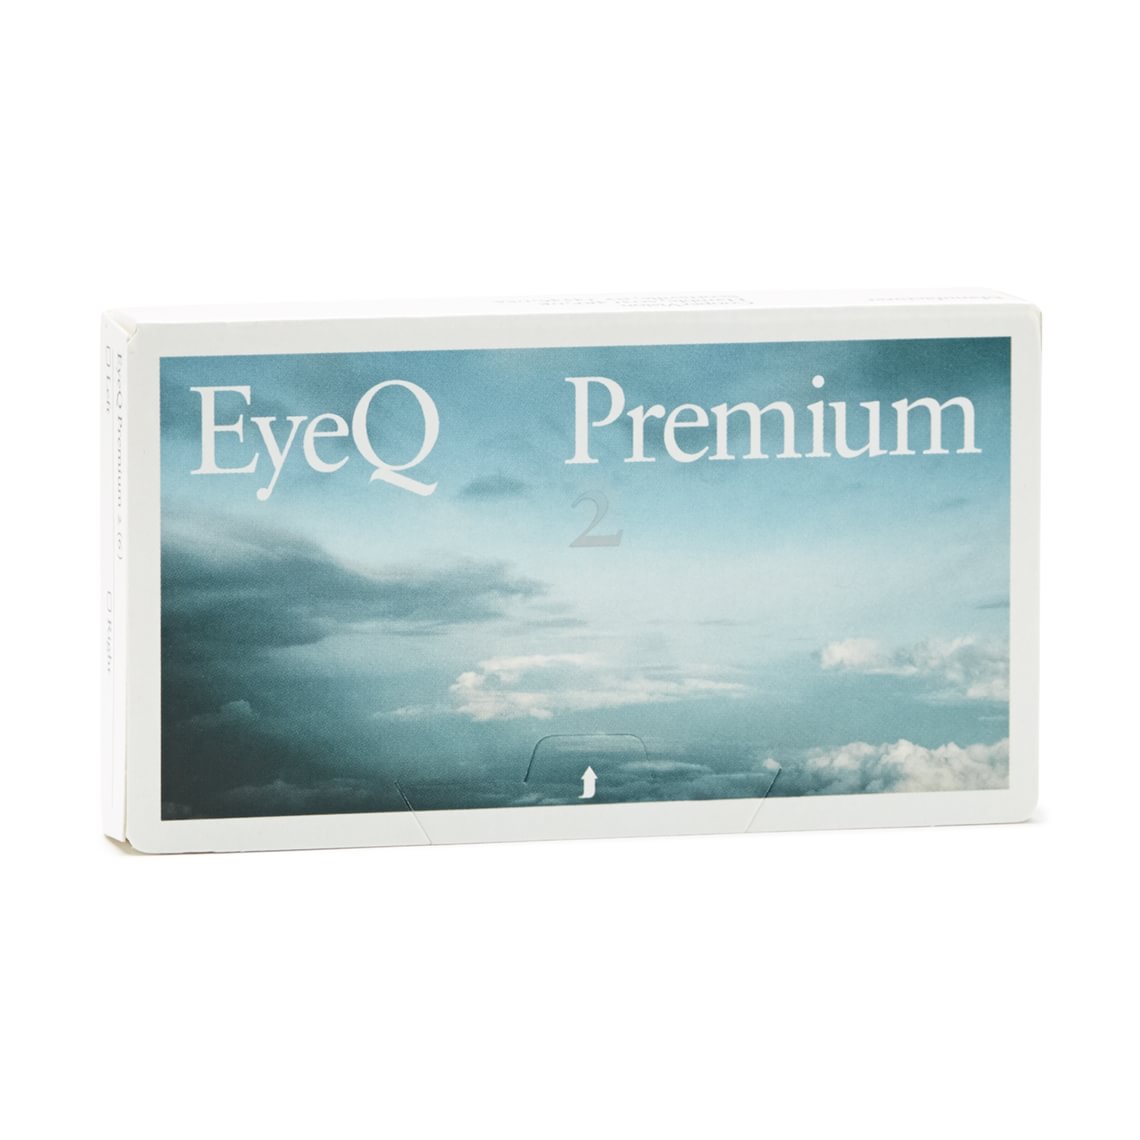 UTGÅTT - EyeQ Premium 2